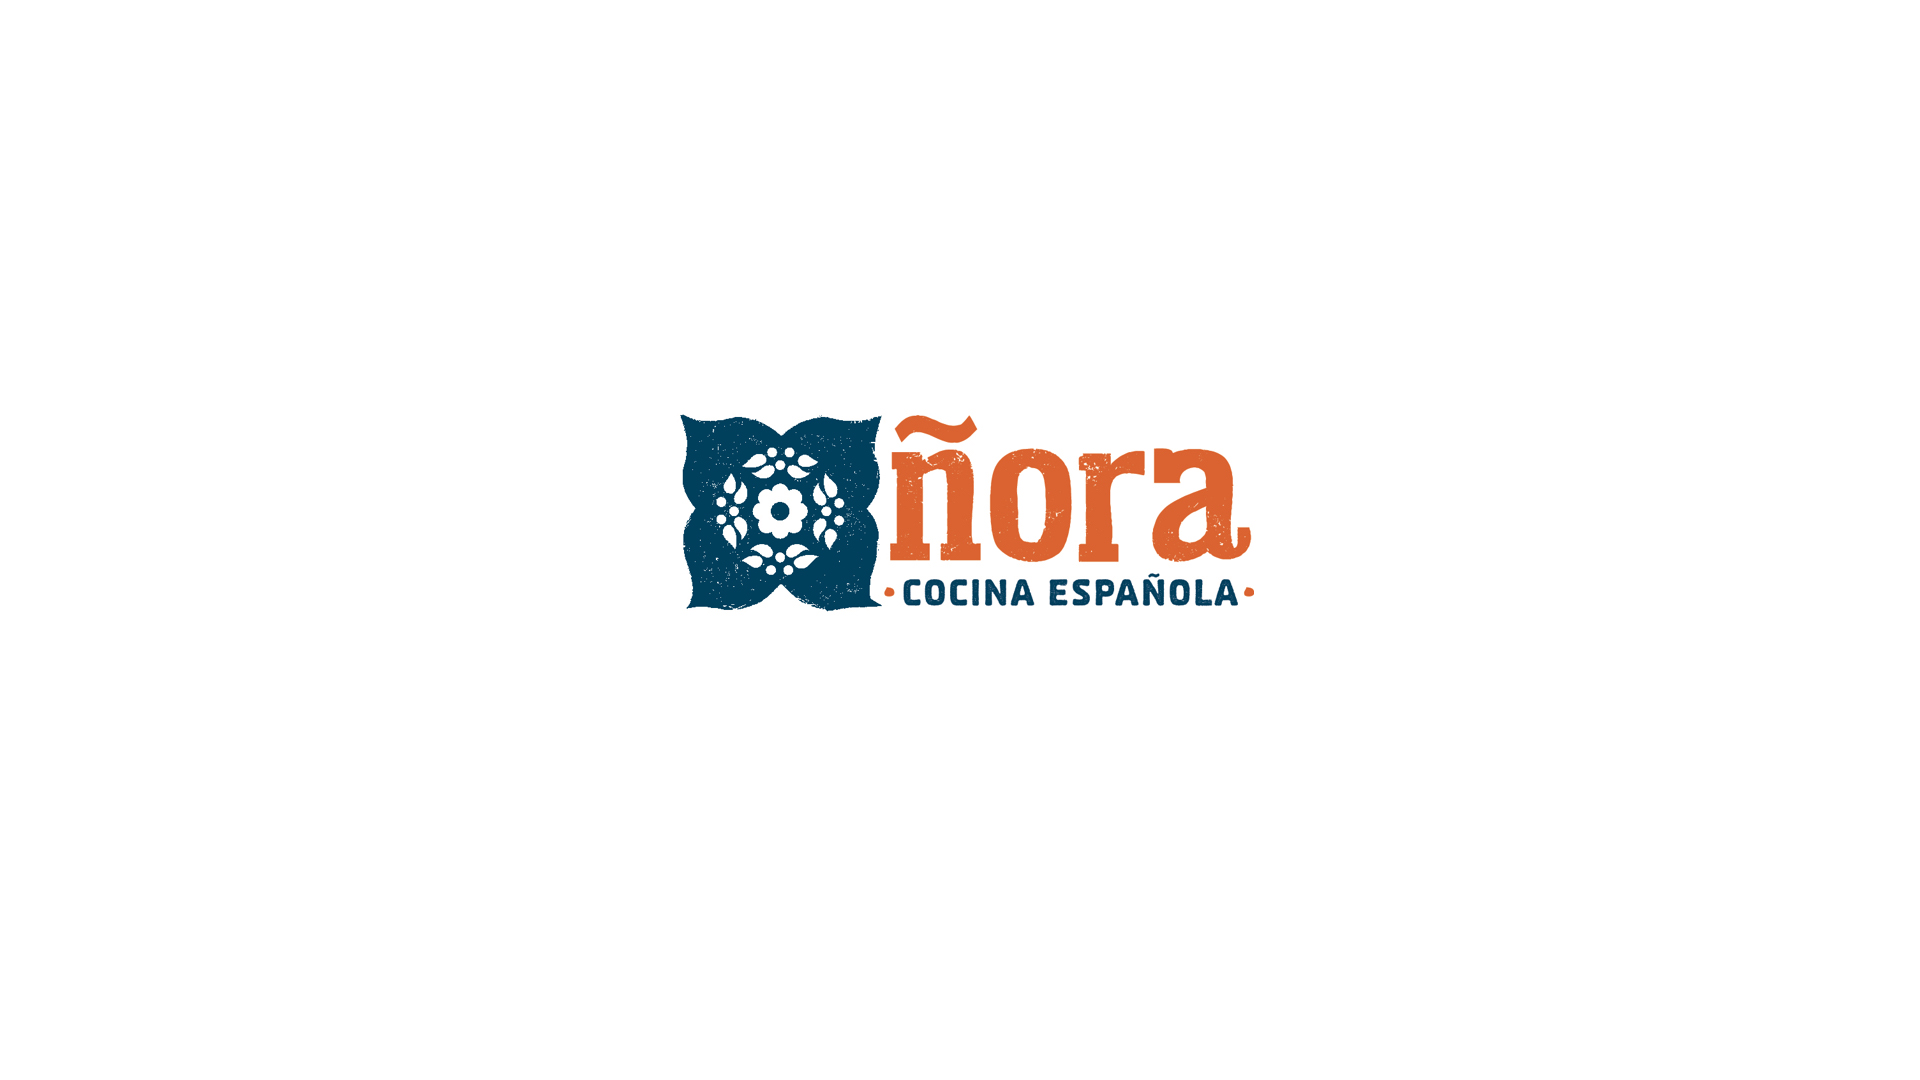 Nora Spanish Catering portfolio Portfolio Wordpress Experts Wordpress SEO Best Wordpress SEO